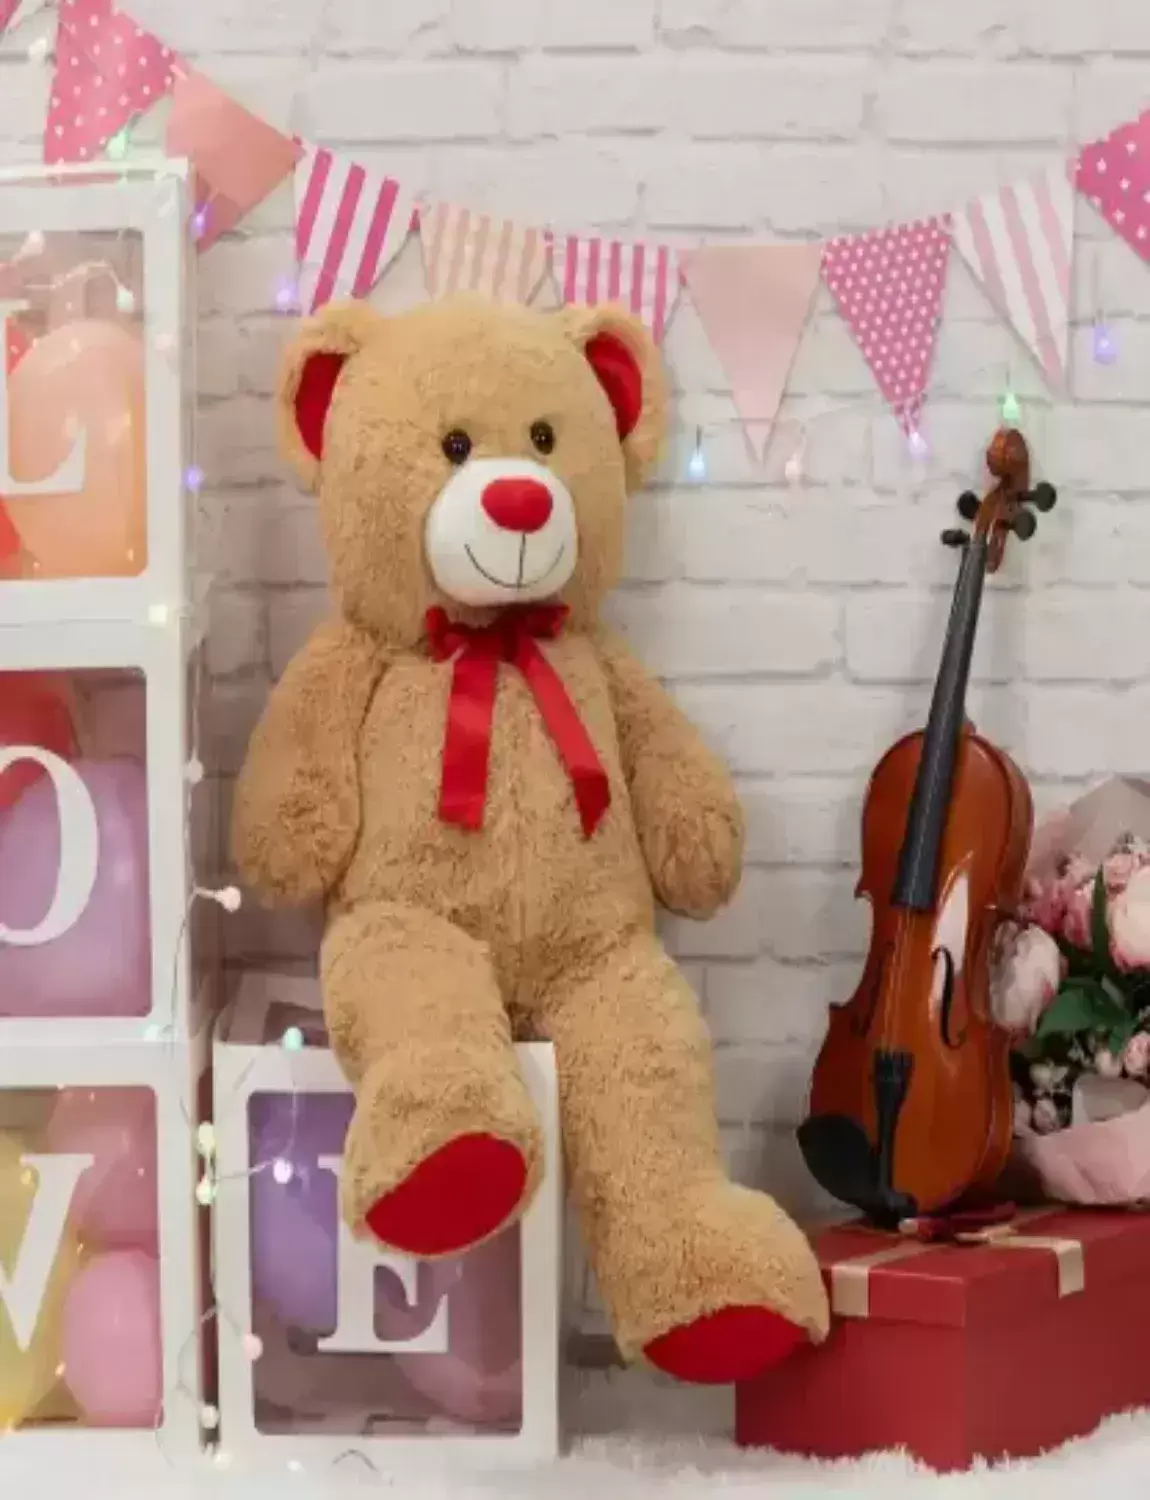 itacheeHUB 6 Feet Teddy bear big gift soft toy Plush stuffed animal